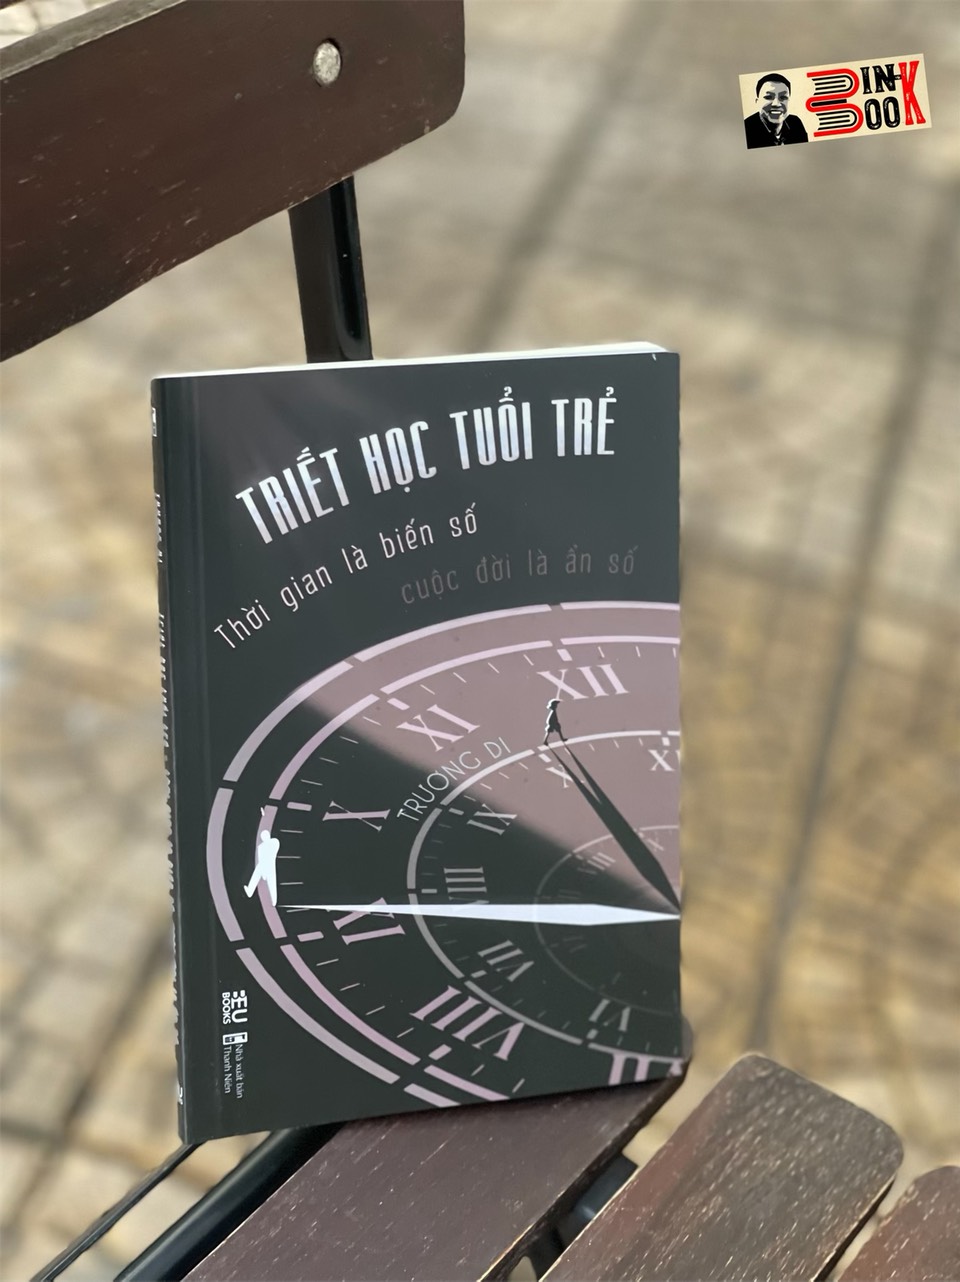 TRIẾT HỌC TUỔI TRẺ - Thời gian là biến số, cuộc đời là ẩn số - Trương Di – X dịch - BeU Books - AZ Việt Nam